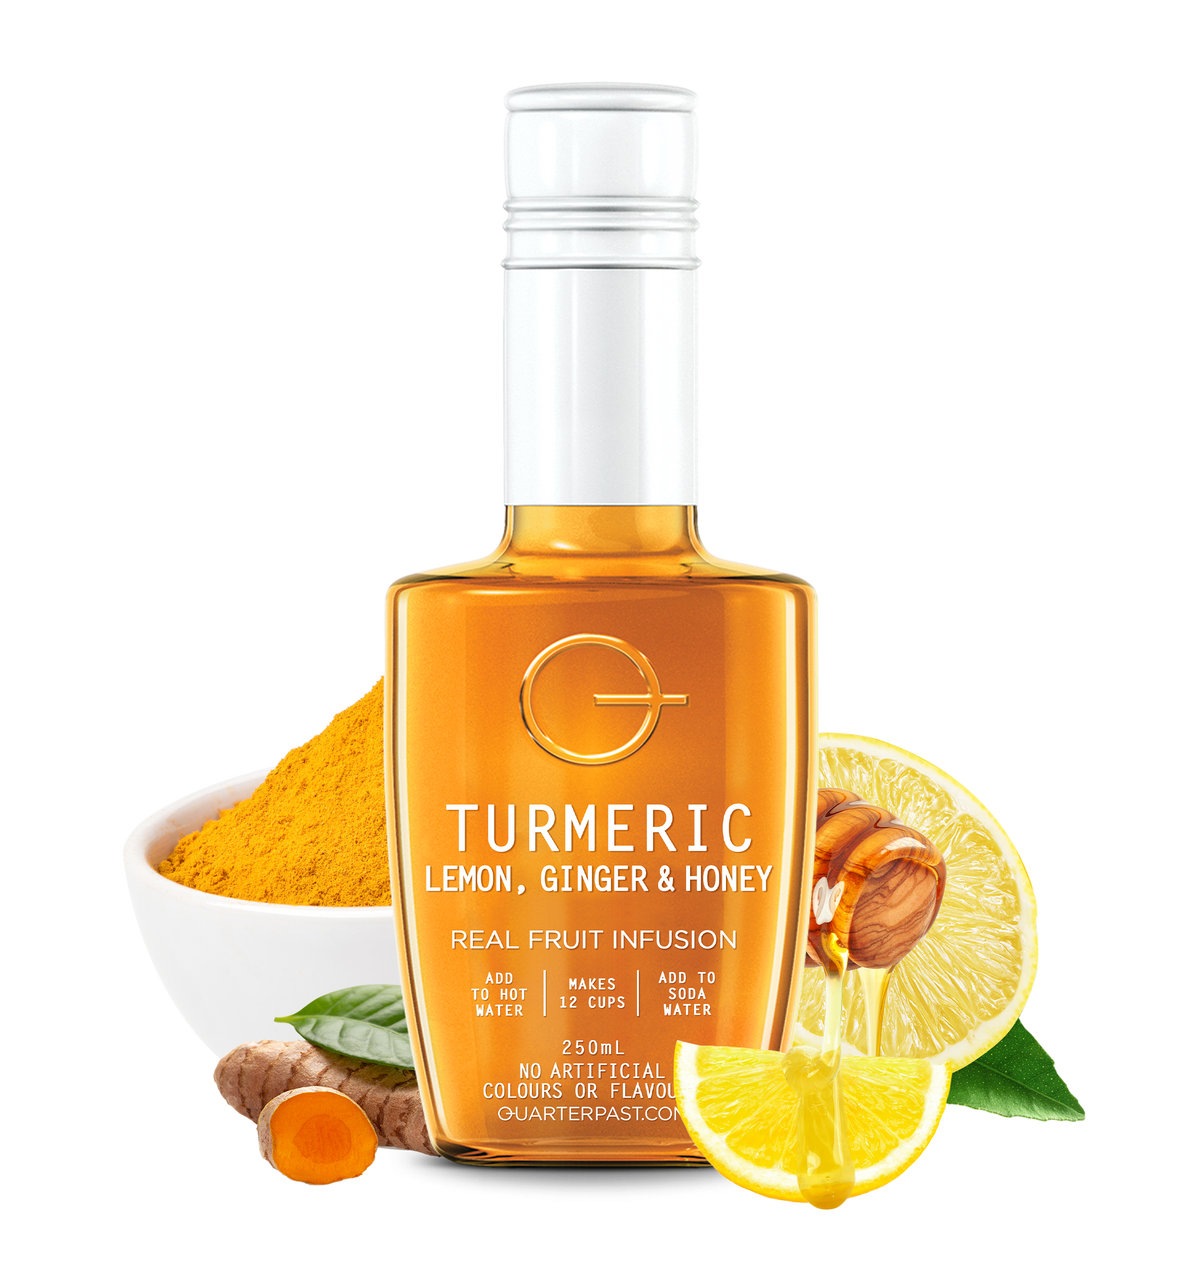 Turmeric Lemon Ginger & Honey Fruit Tea